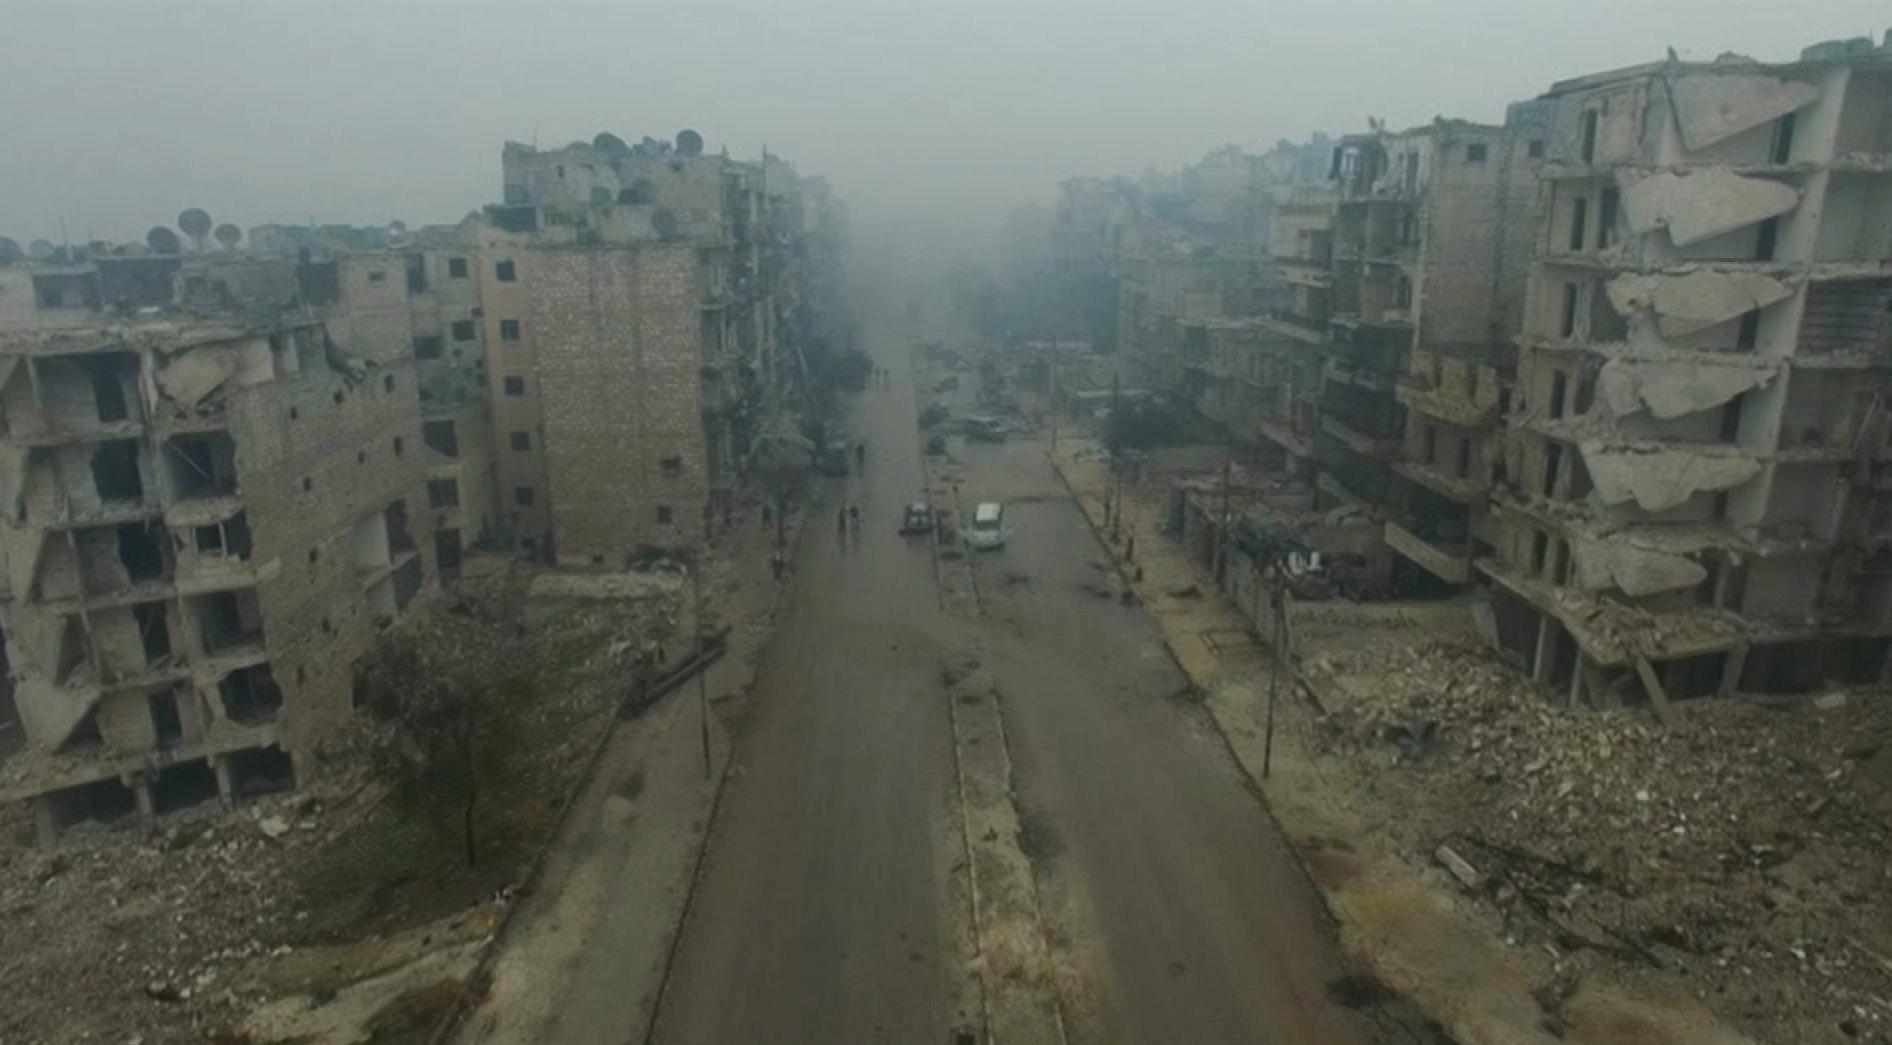 صورة من مقطع فيديو لاضرار القنابل في شرق حلب سوريا. الفيديو نشر في13 ديسمبر /كانون الاول 2016.